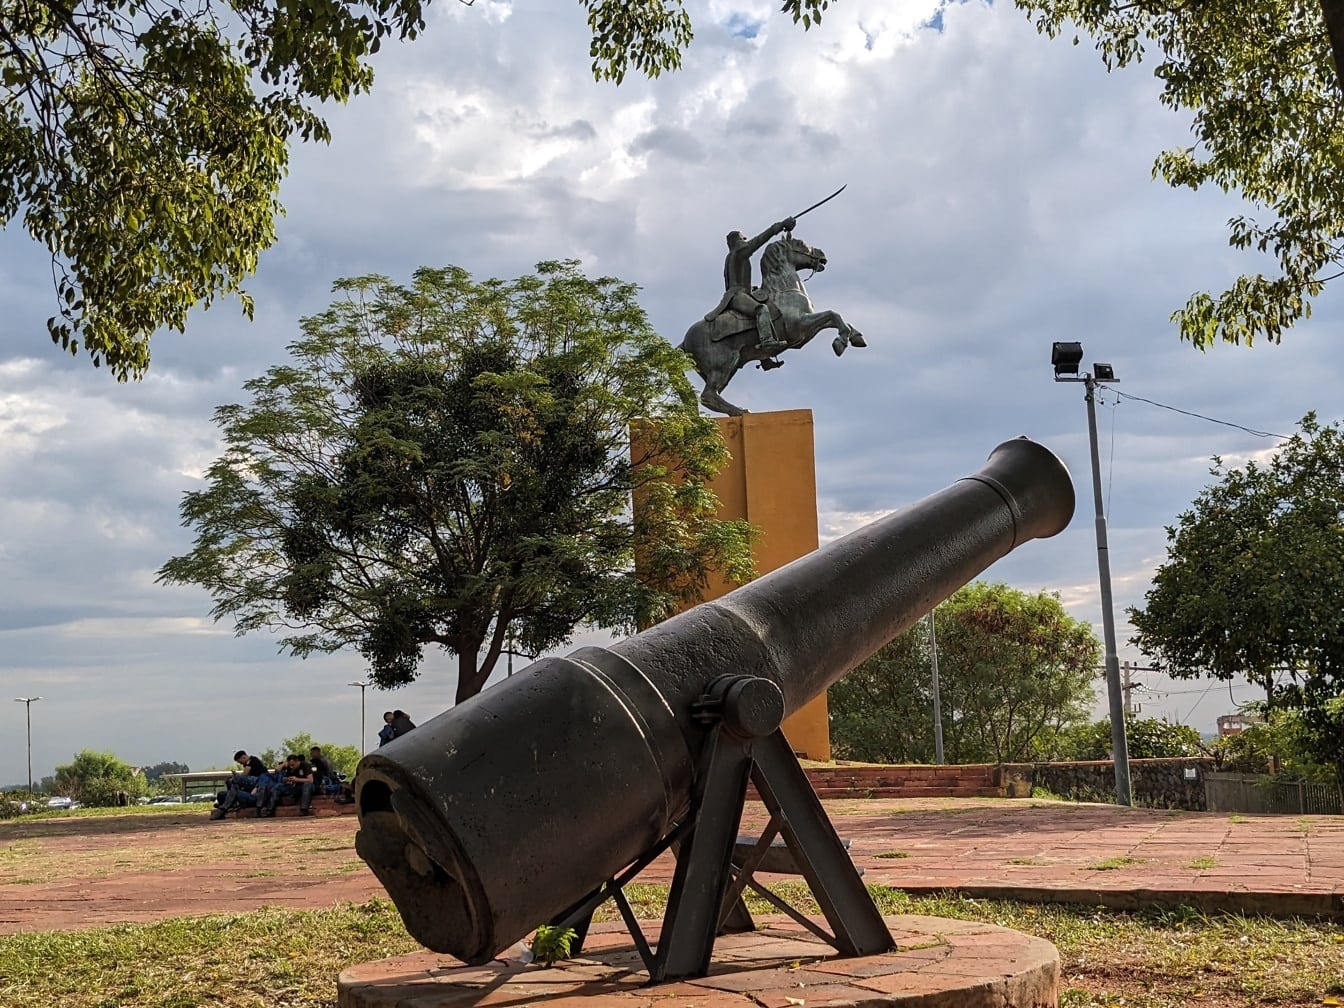 Veistos tykistä ja patsas miehestä hevosella Victory-puistossa Asuncionissa, Paraguayn tasavallan pääkaupungissa